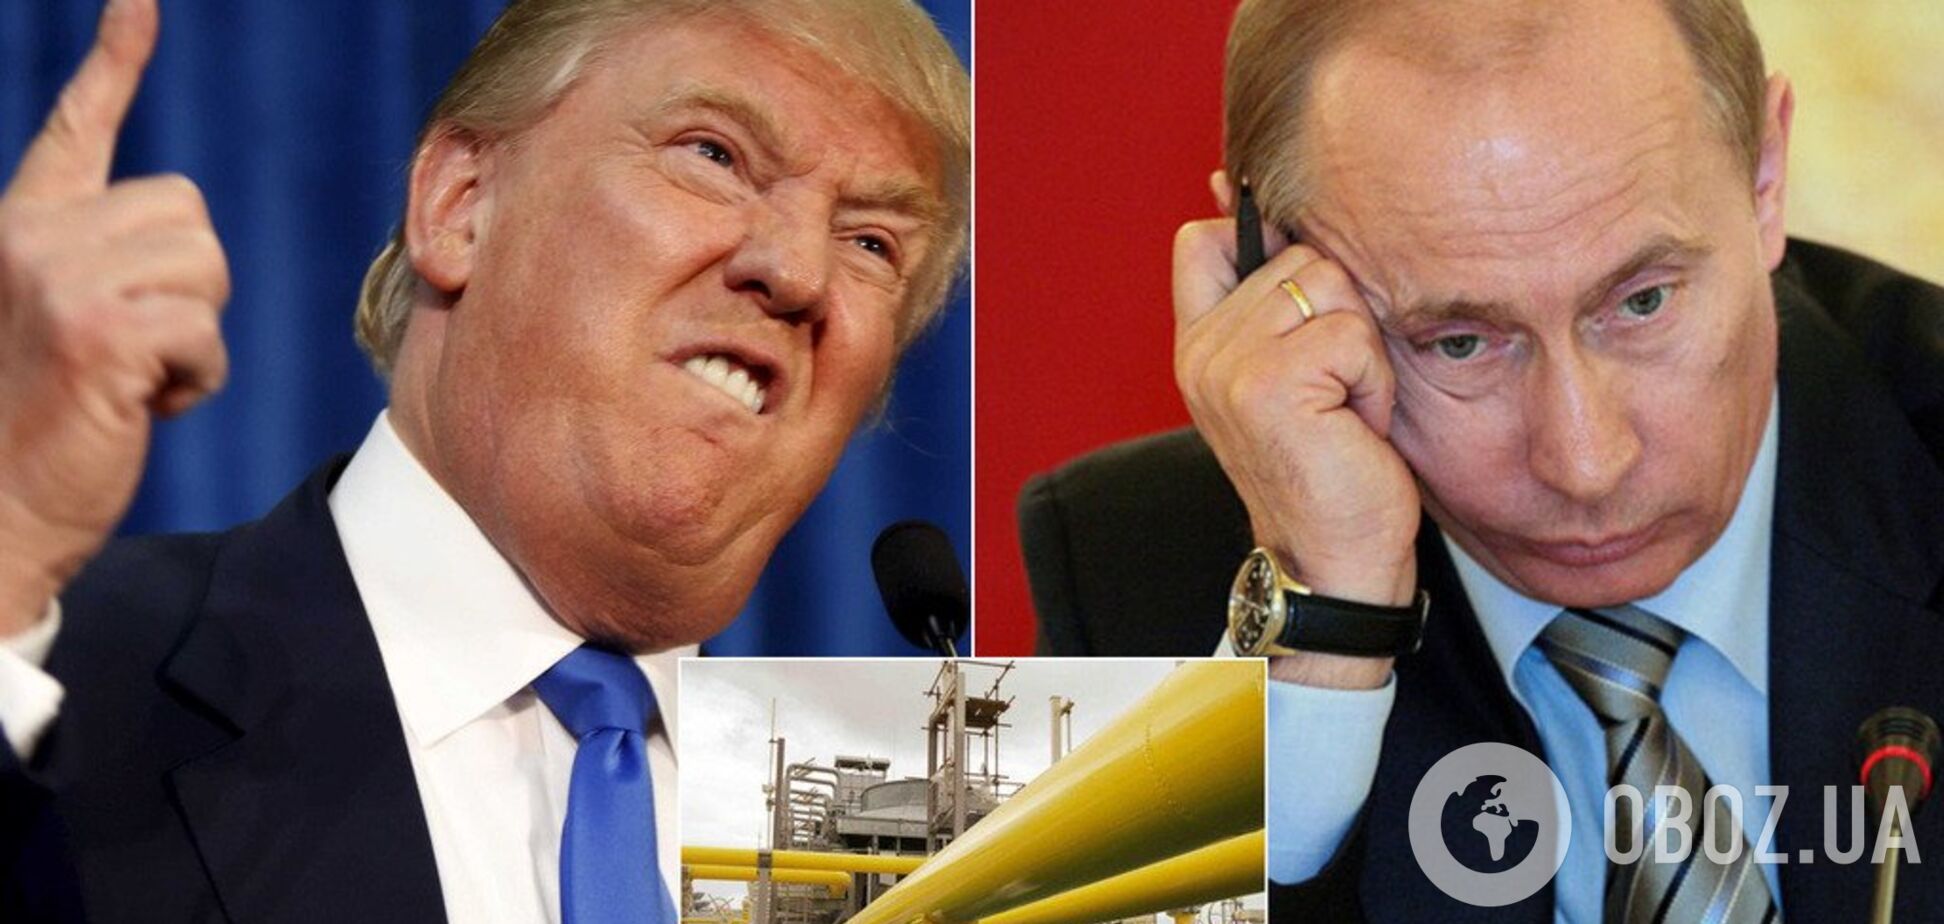 Не покупайте у них газ: Трамп в Давосе сделал выпад против России